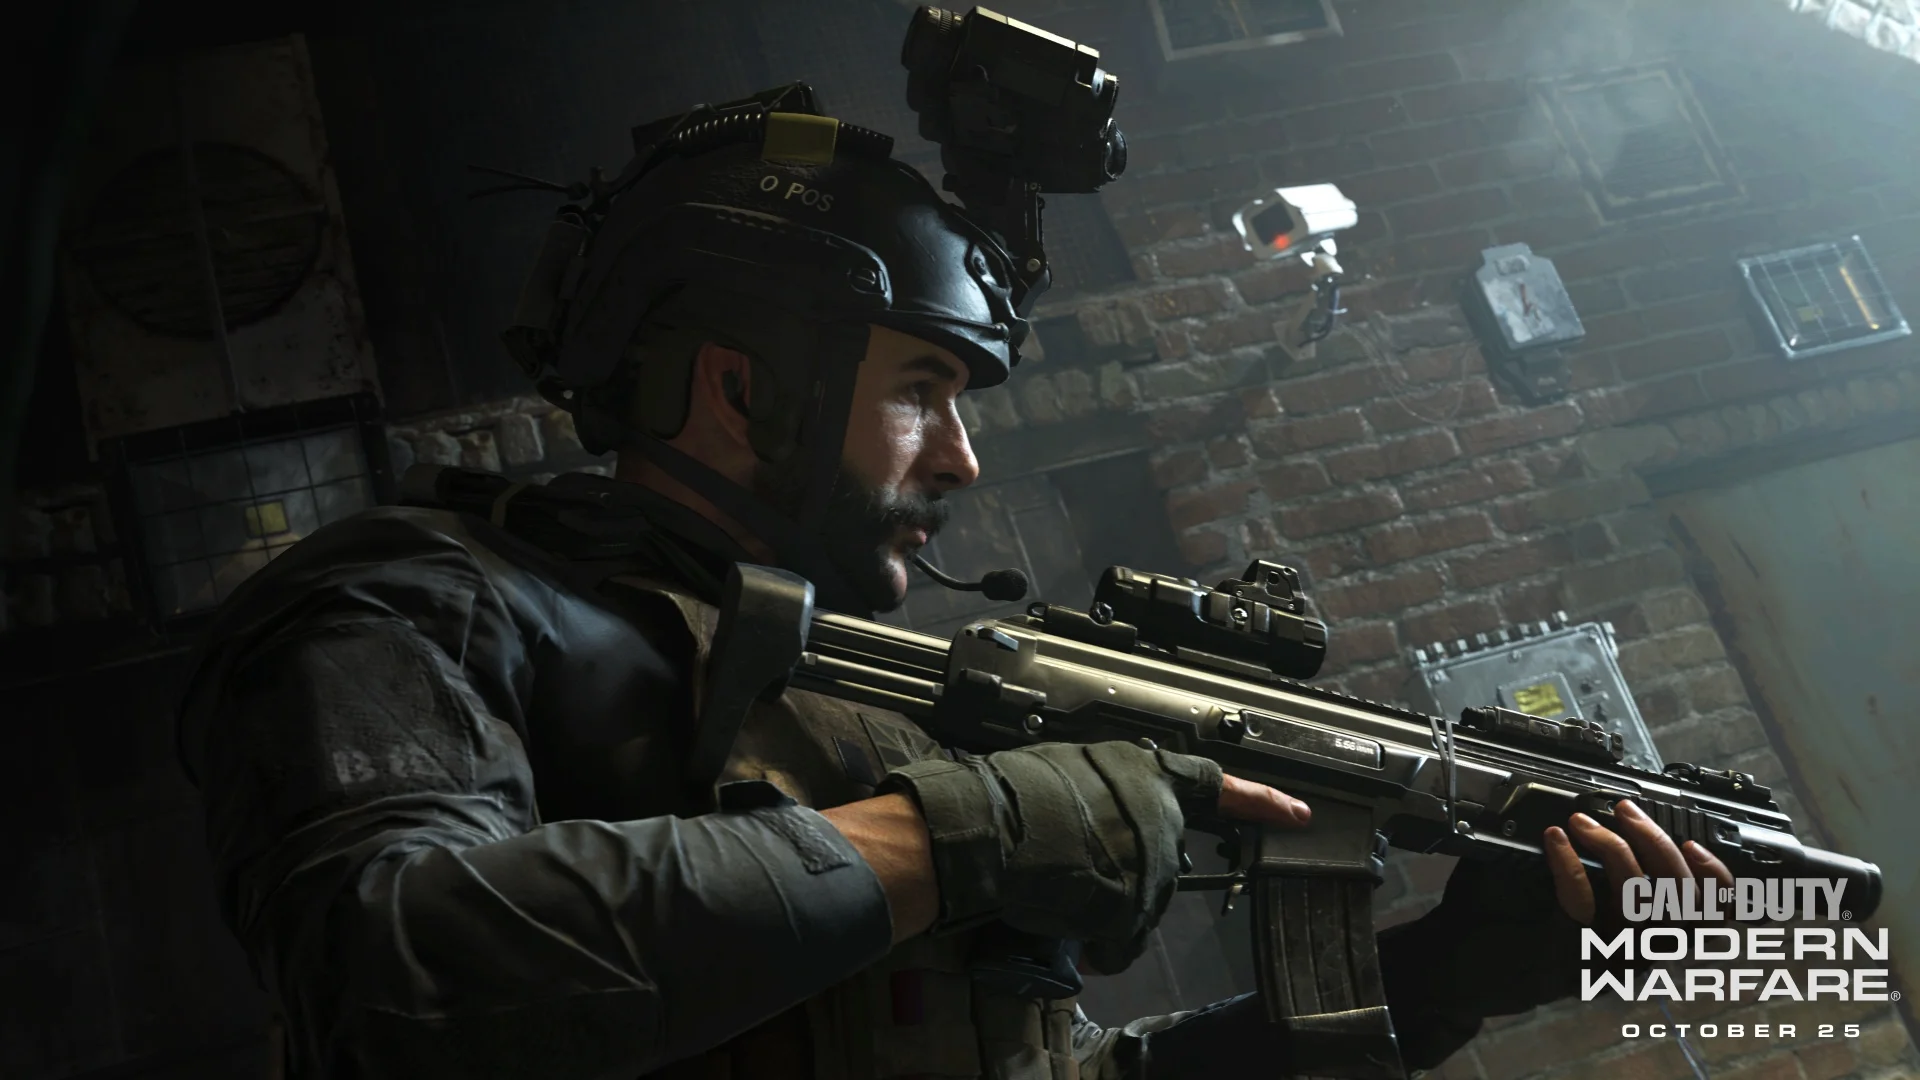 Мировая премьера: Call of Duty: Modern Warfare. Ни слова по-русски - фото 1